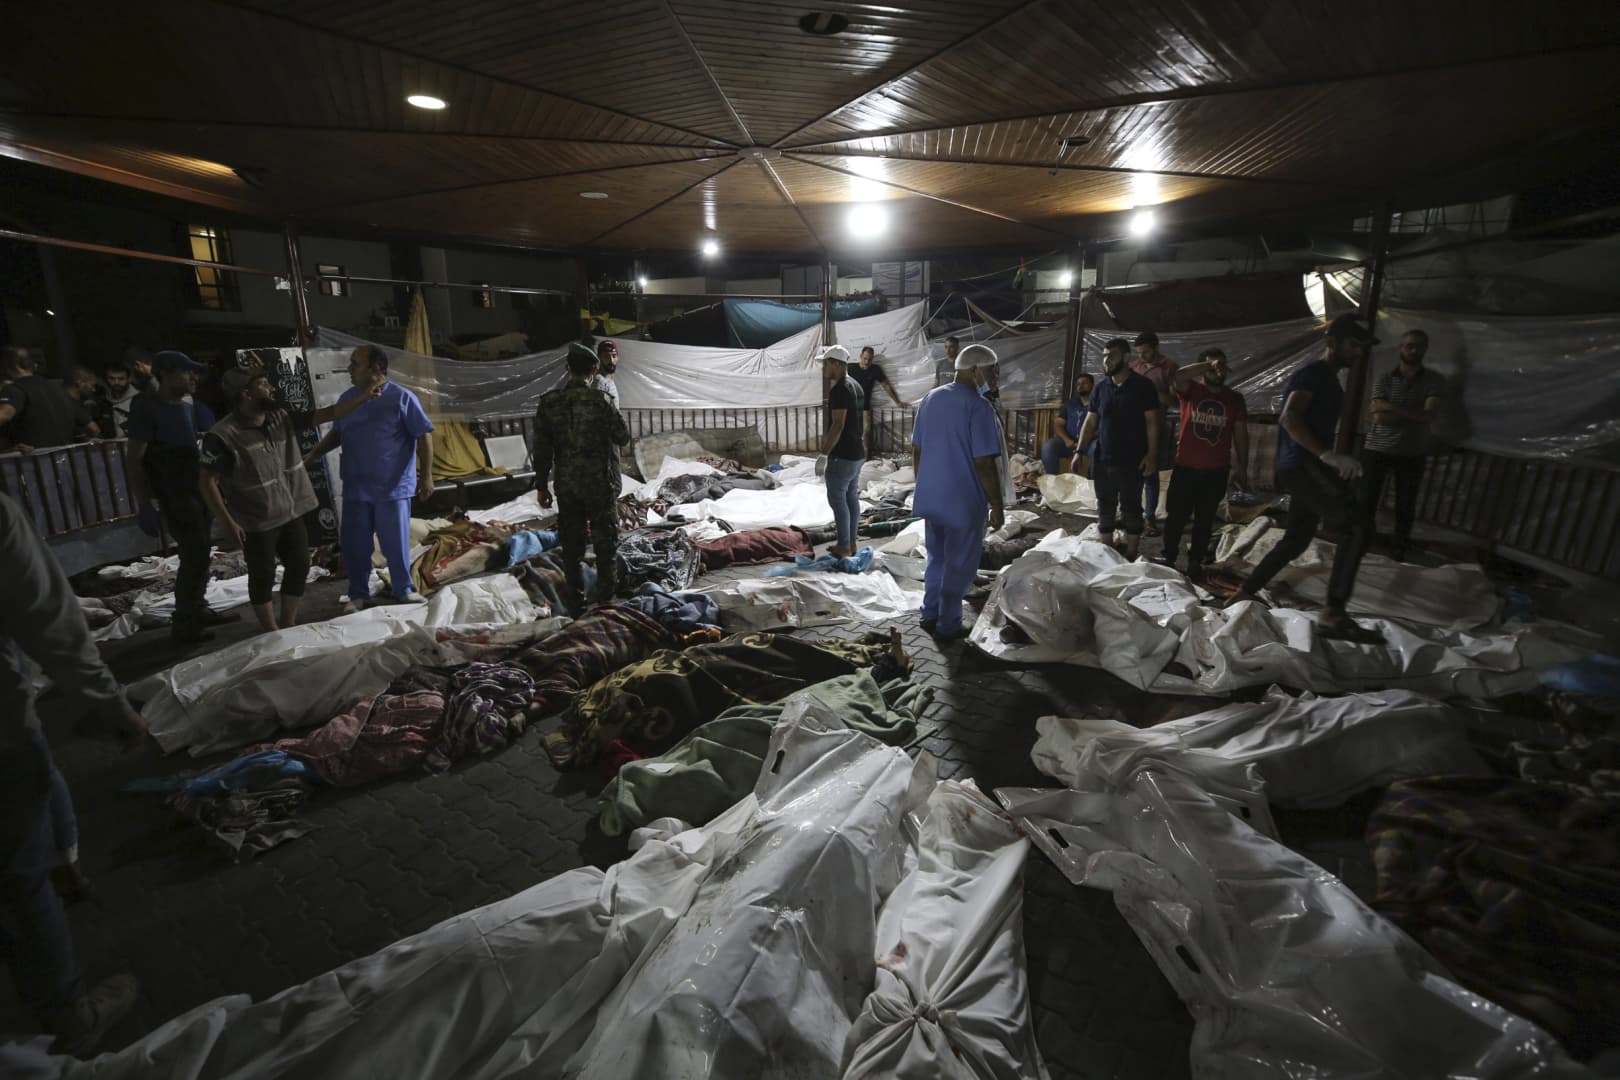 Belgium 1 millió euró értékű orvosi segélycsomagot küld Gázába